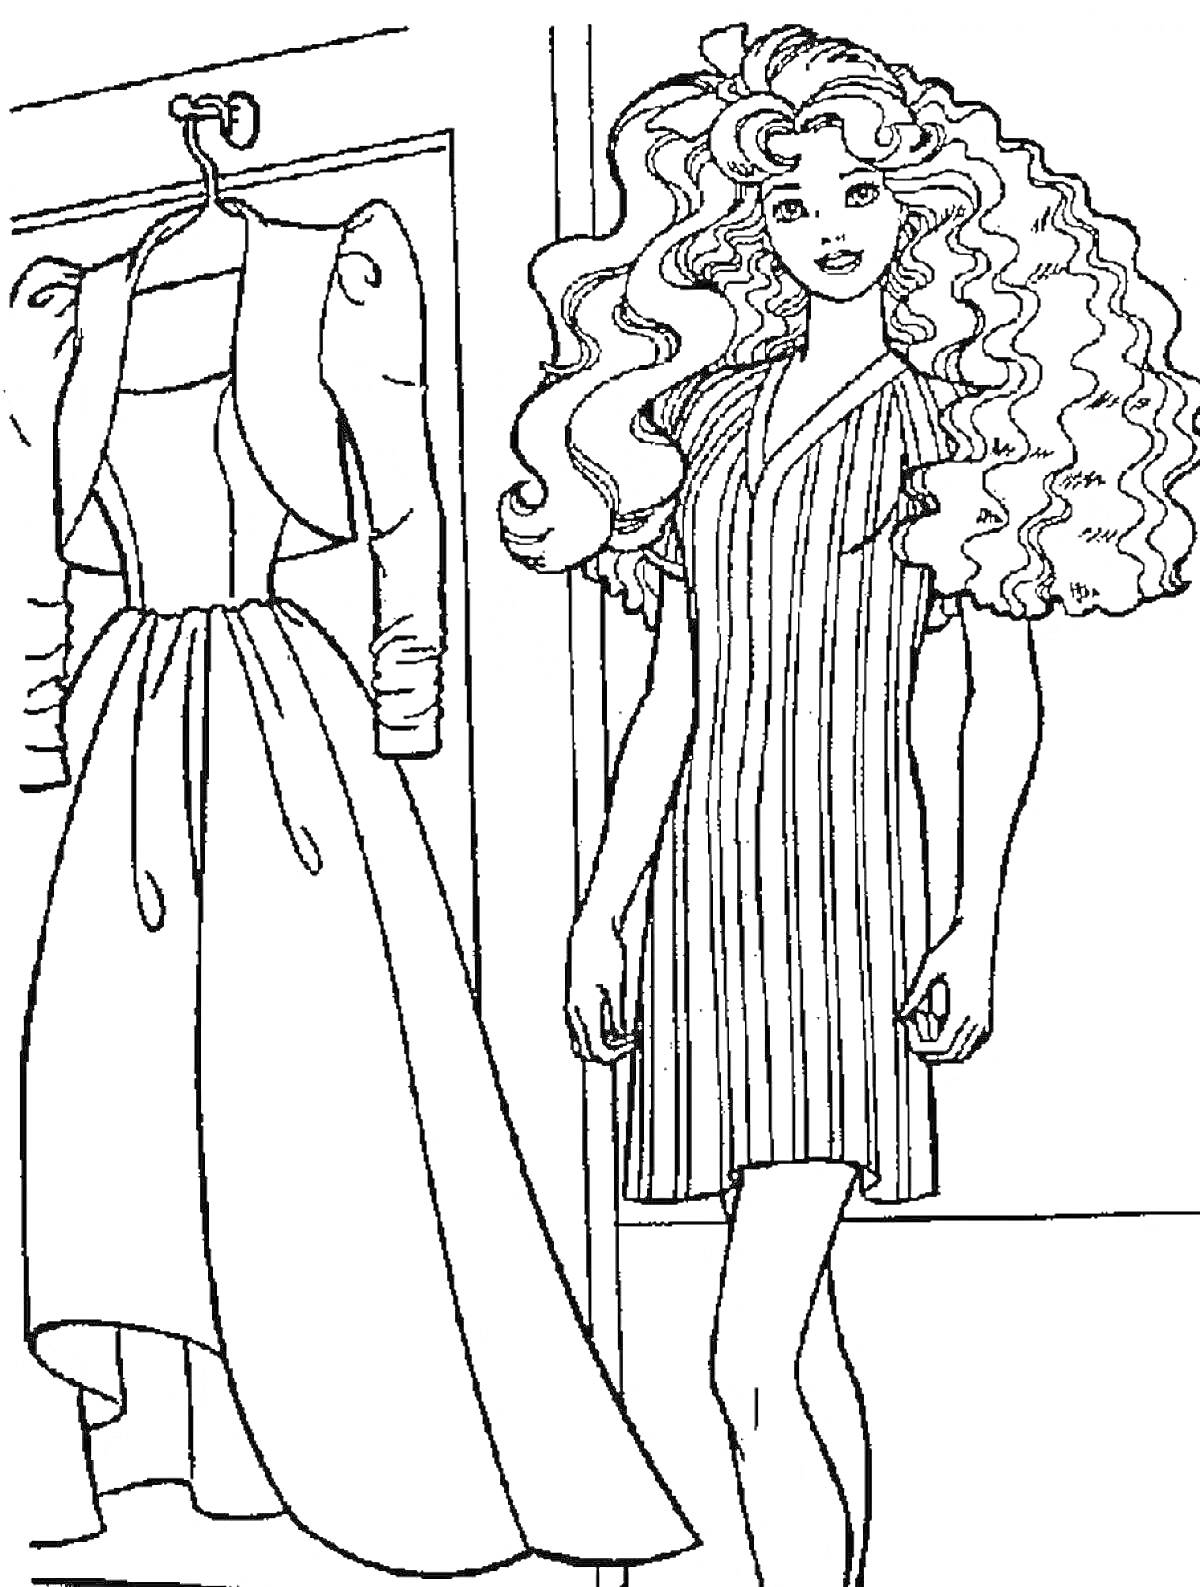 Барби с длинными вьющимися волосами в полосатом платье рядом с вешалкой и вечерним платьем